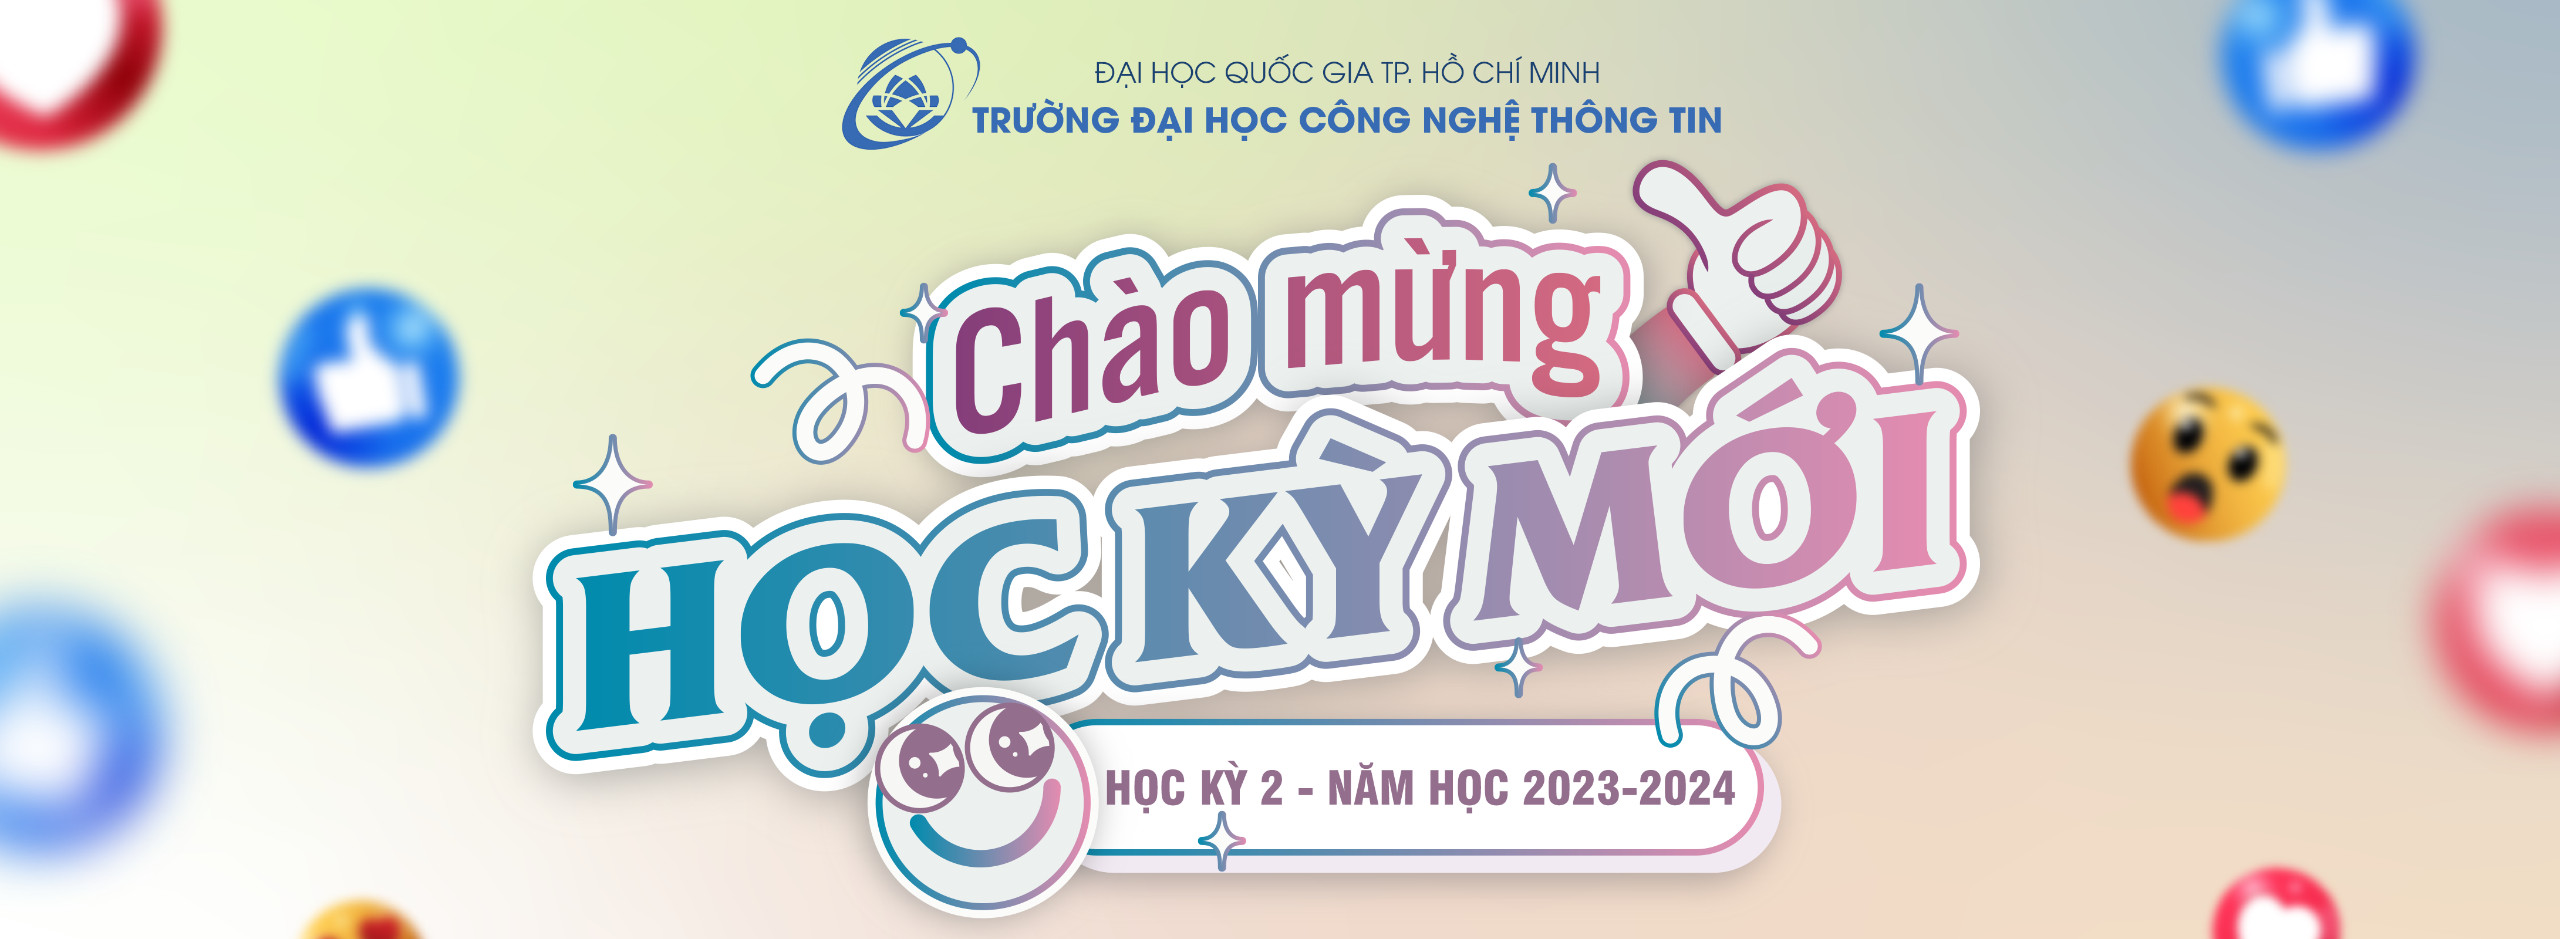 Chào mừng học kỳ mới, HK2, 2023-2024